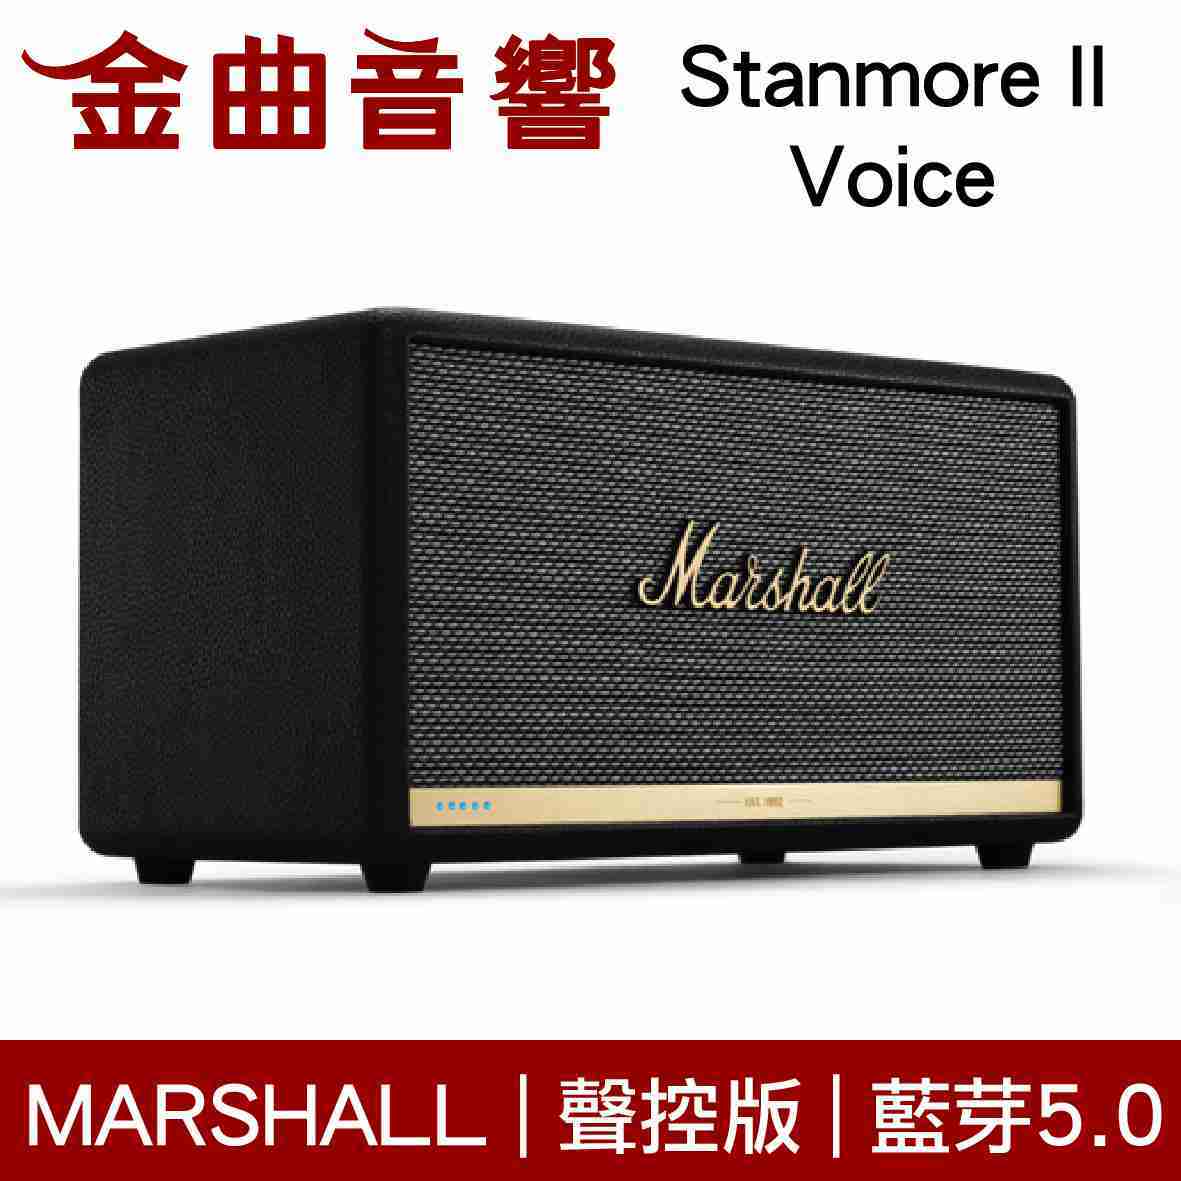 Marshall 馬歇爾 Stanmore II Voice 聲控 藍芽 智慧助理 喇叭 | 金曲音響